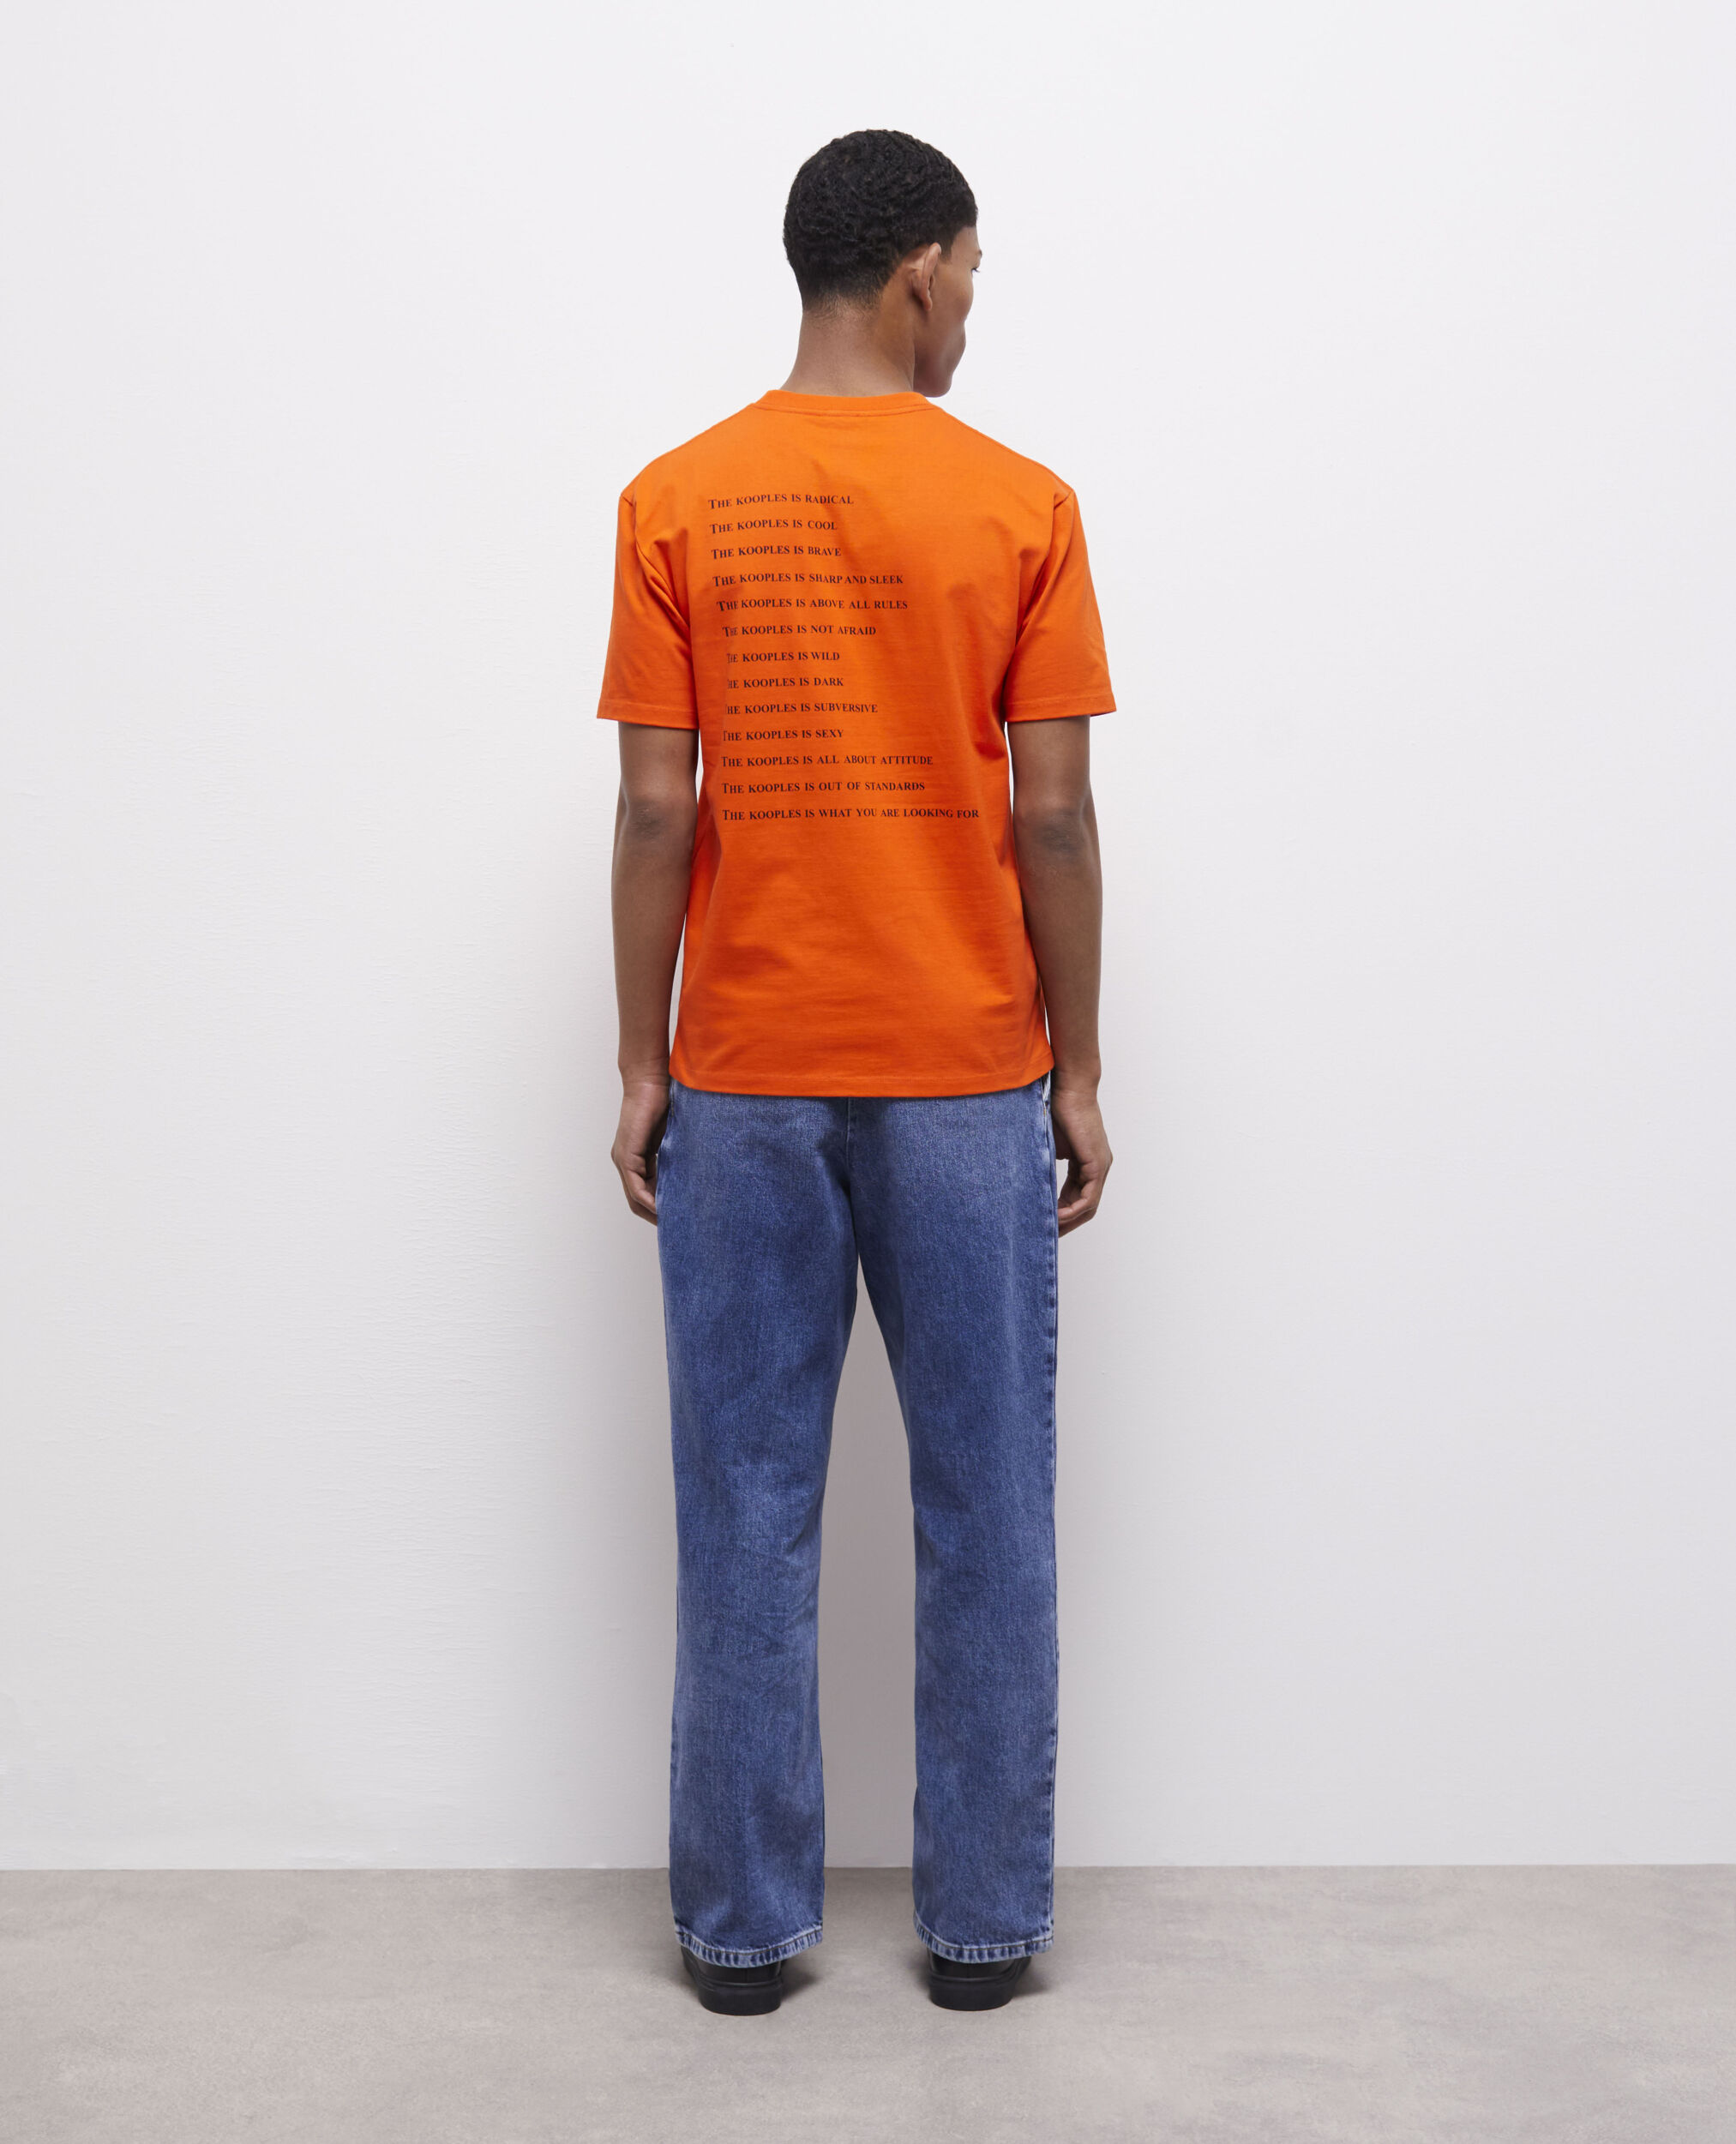 Camiseta What is naranja para hombre, PUMPKIN, hi-res image number null